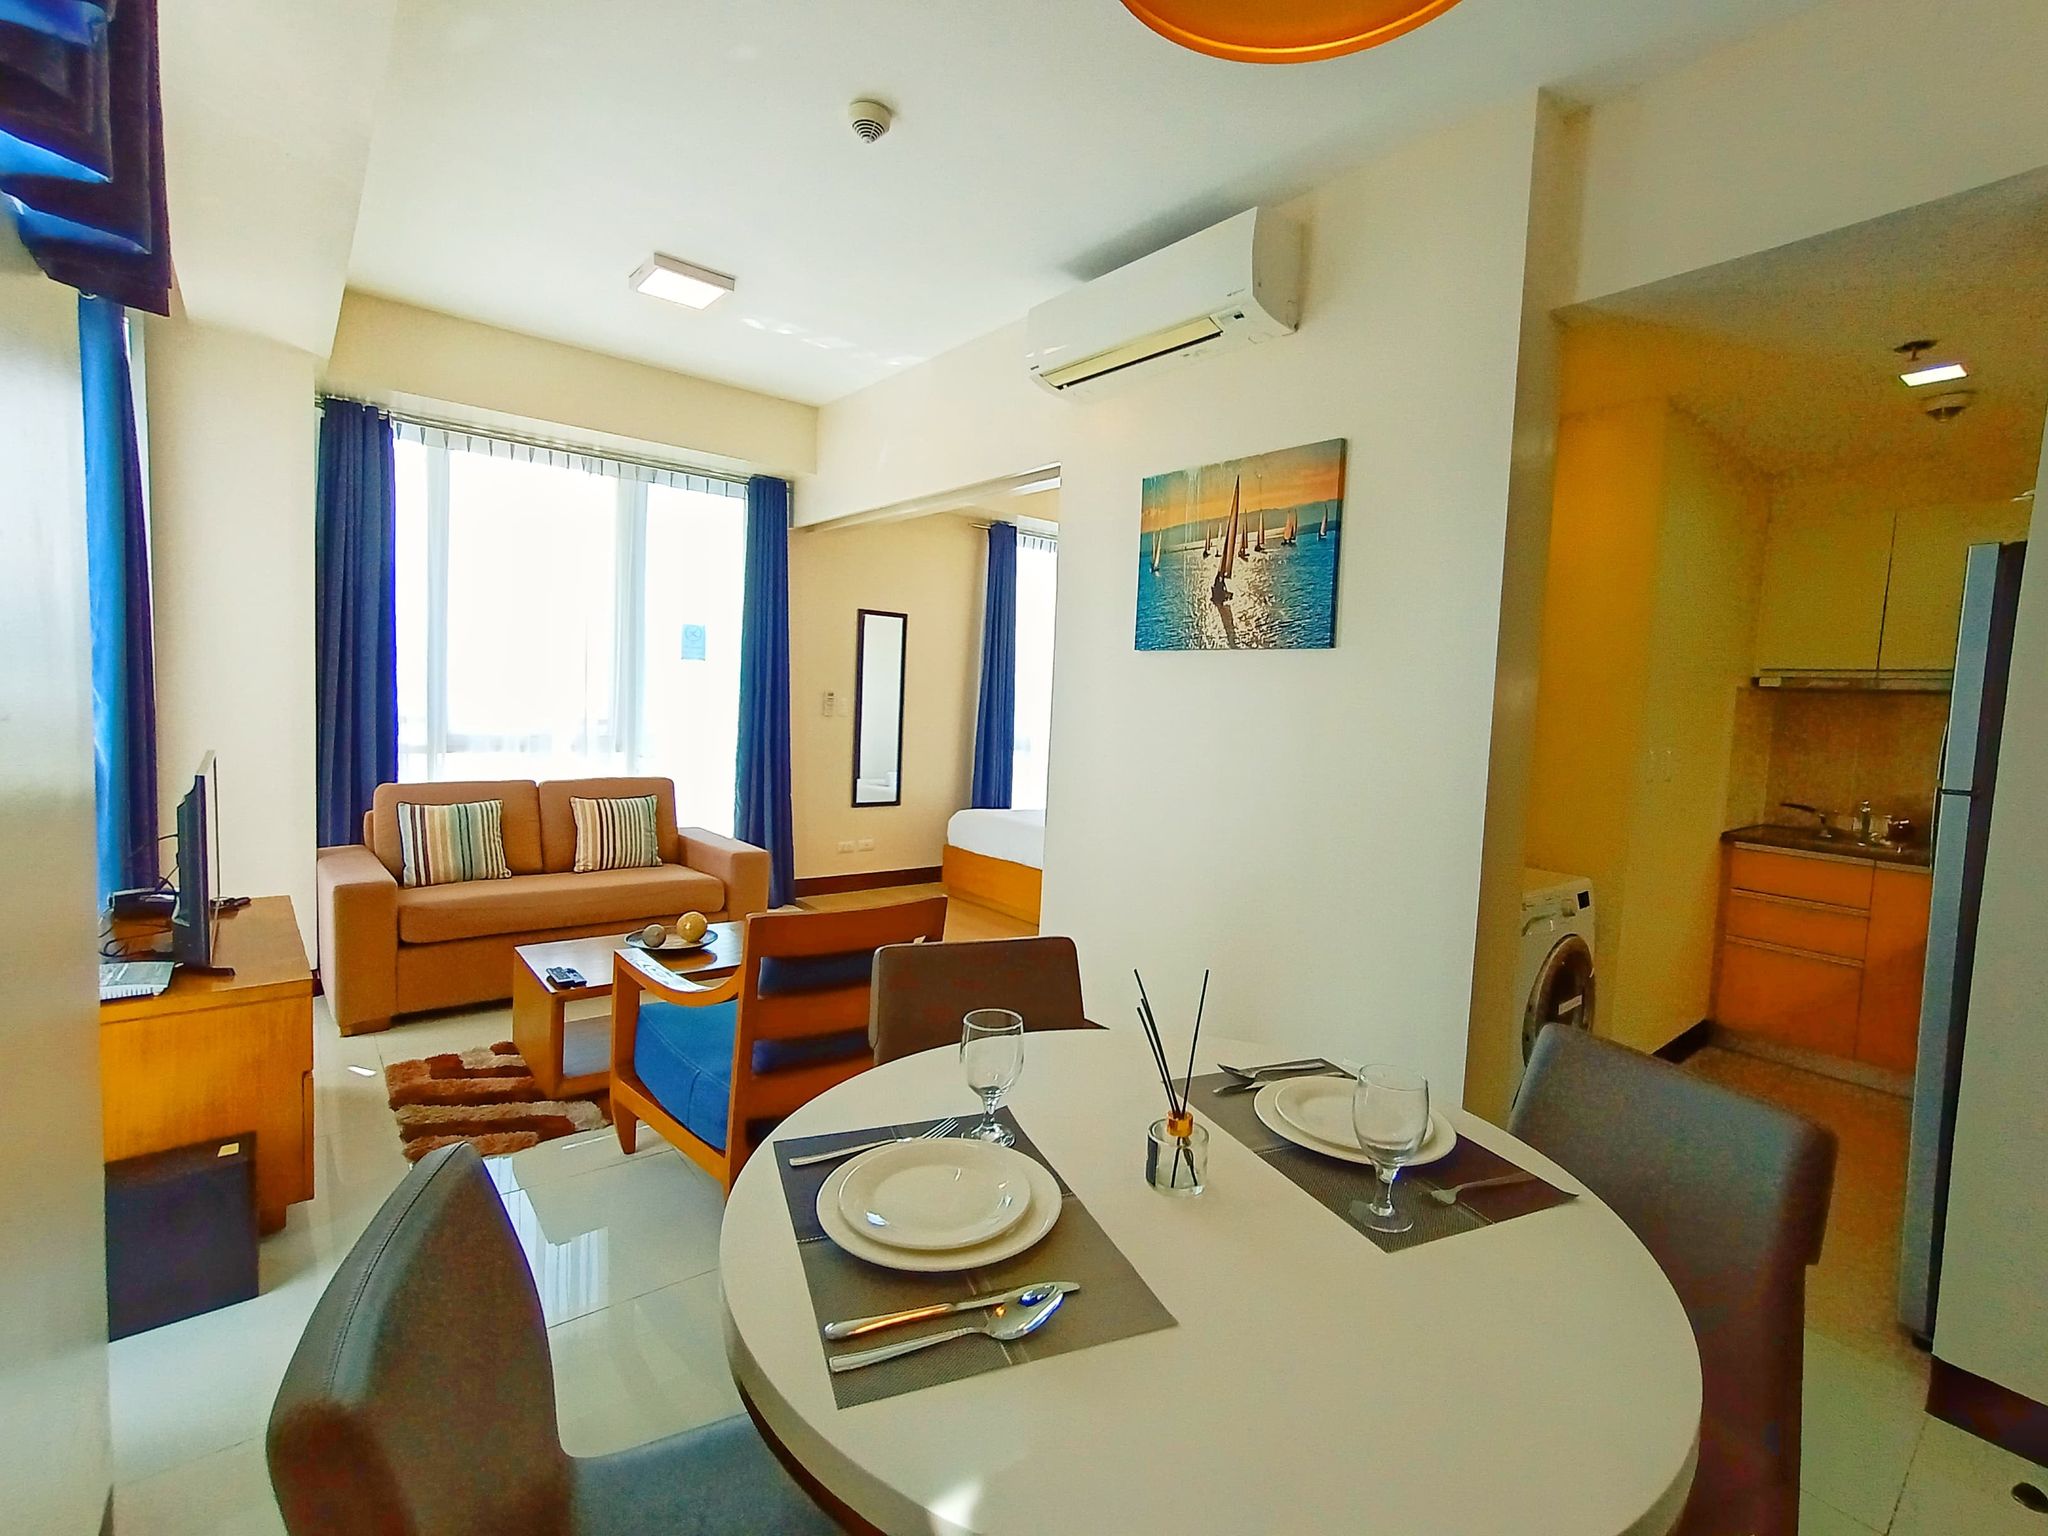 Studio Type Condominium in Cebu City for Rent